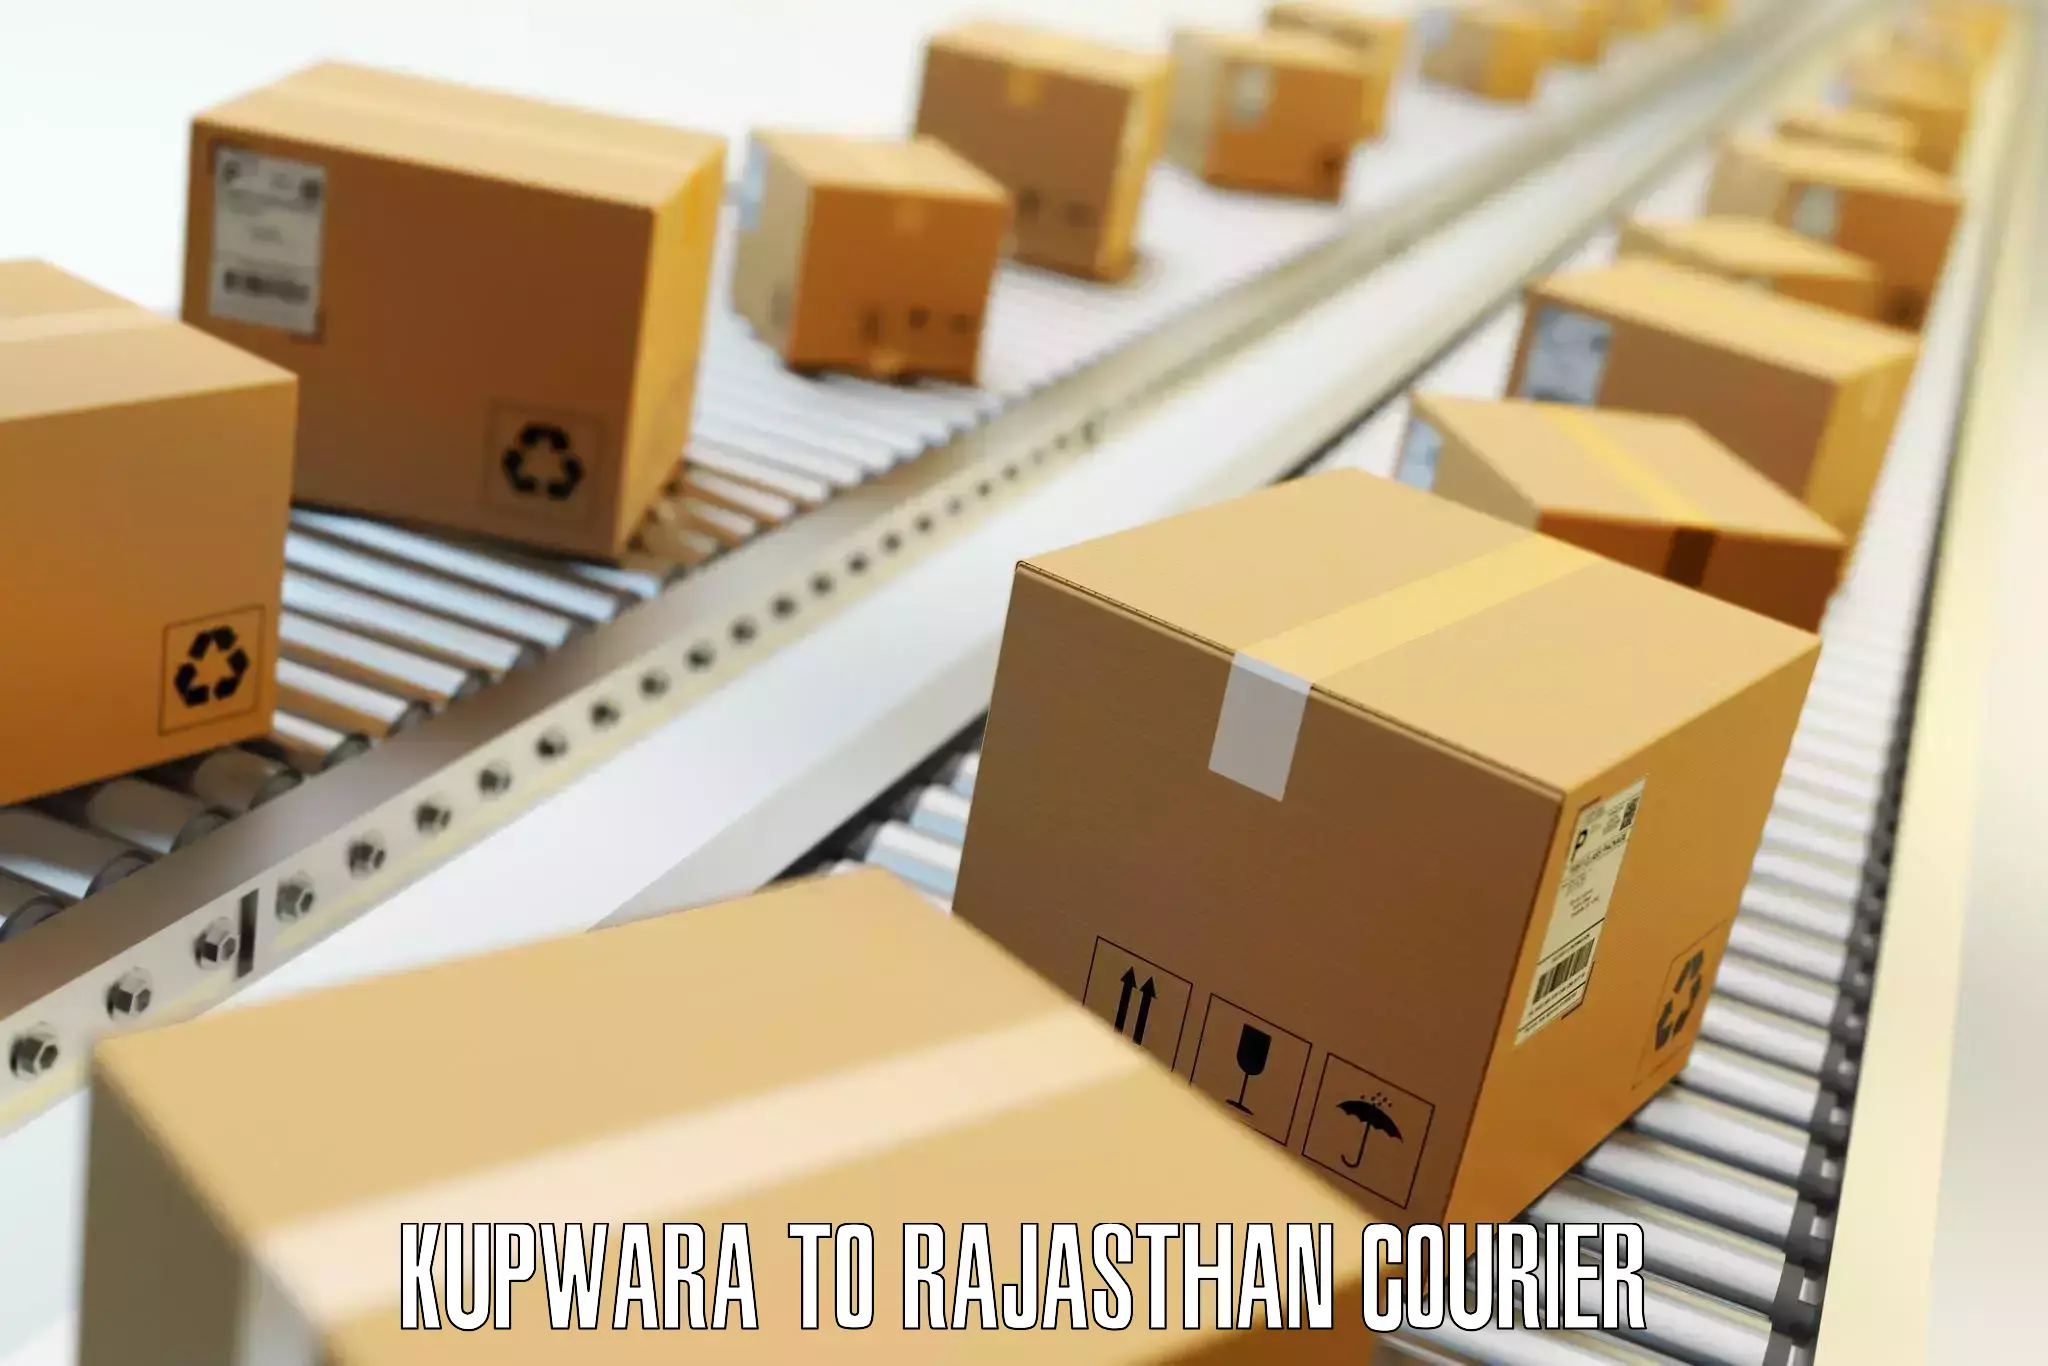 Luggage forwarding service Kupwara to Rajasthan